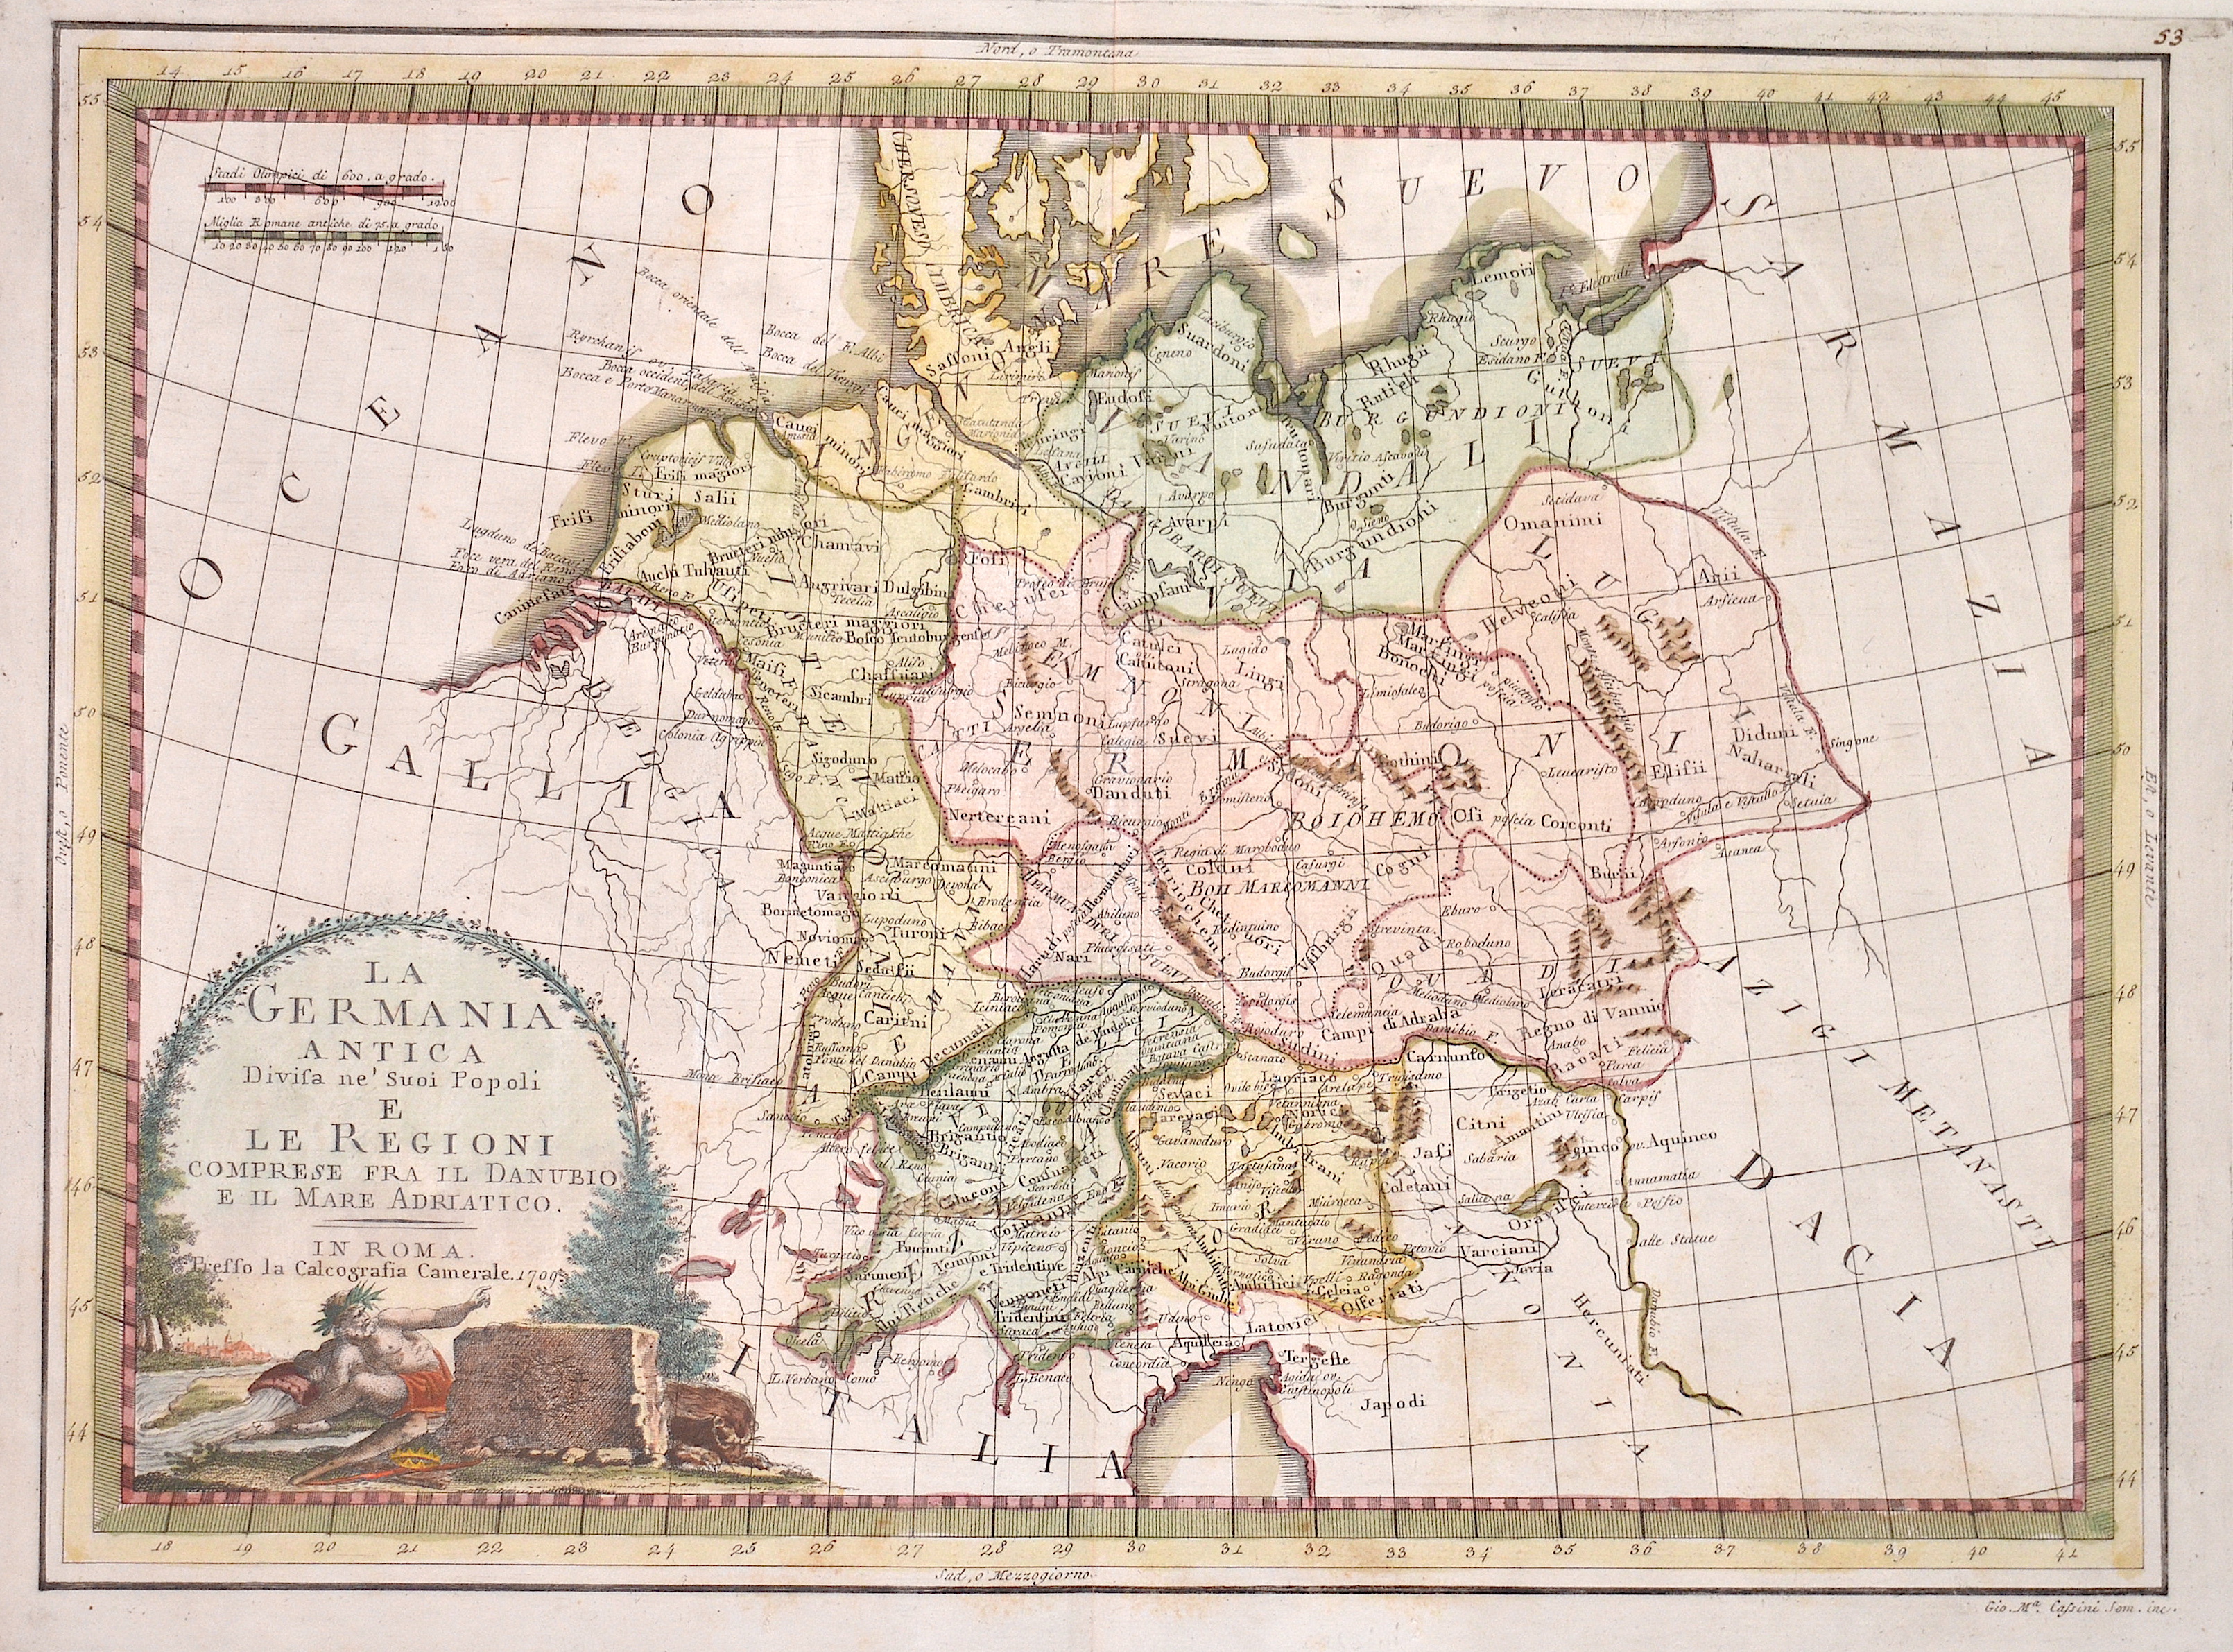 Cassini  La Germania antica divisa ne´suoi popoli e le regioni…